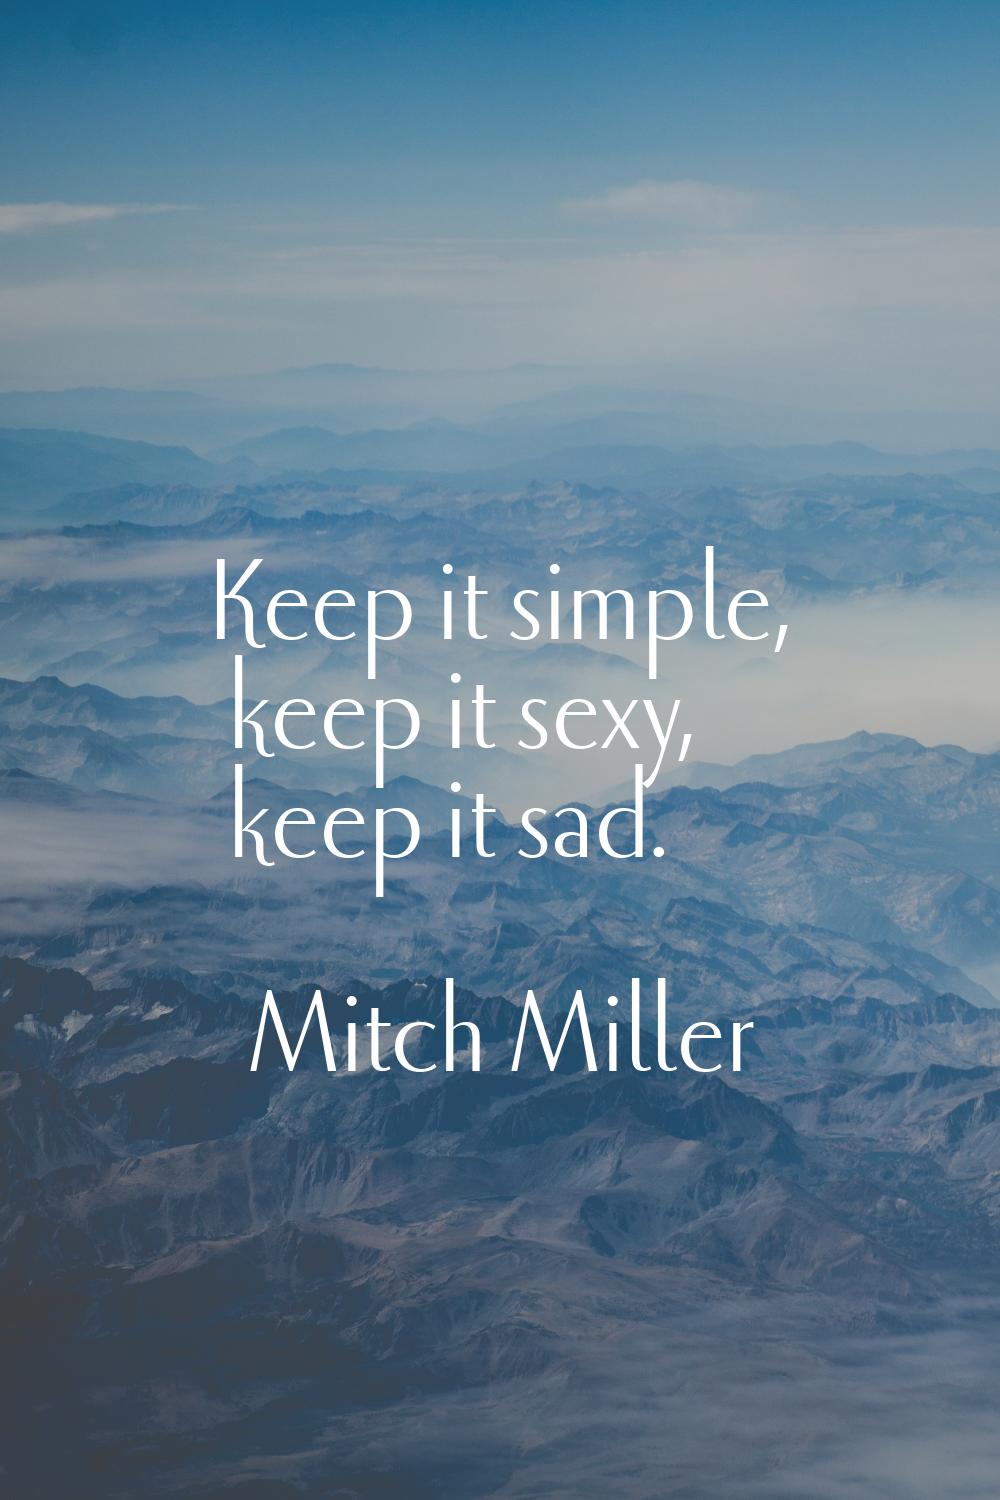 Keep it simple, keep it sexy, keep it sad.